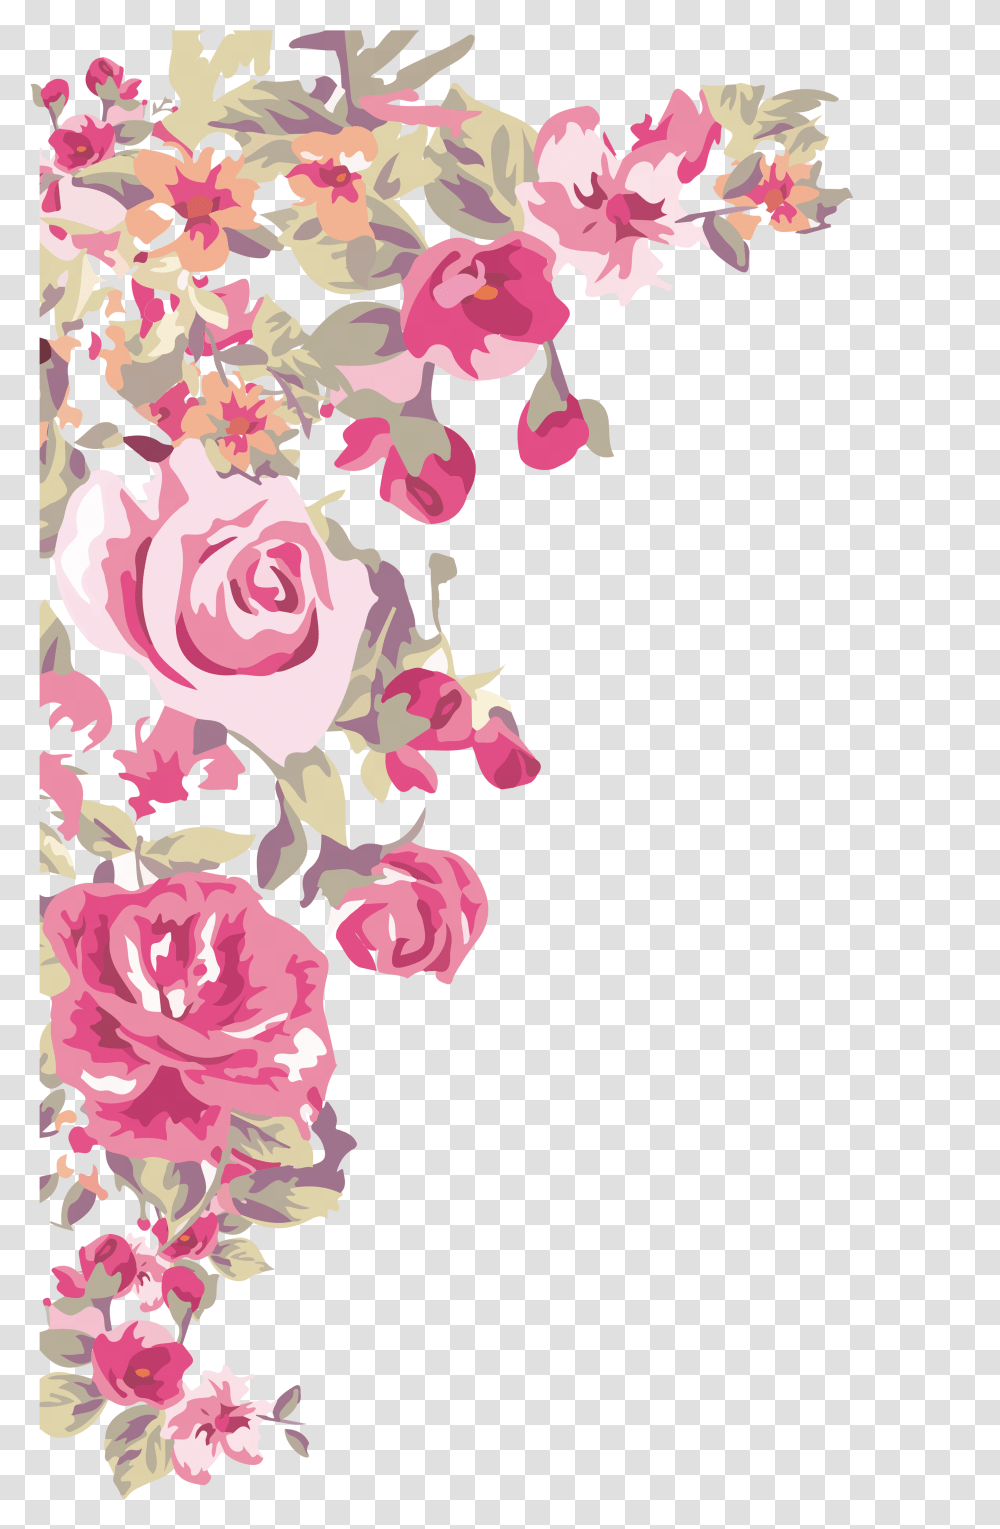 Painted Flowers Corner Download Flower Corner Border Design, Graphics, Art, Floral Design, Pattern Transparent Png